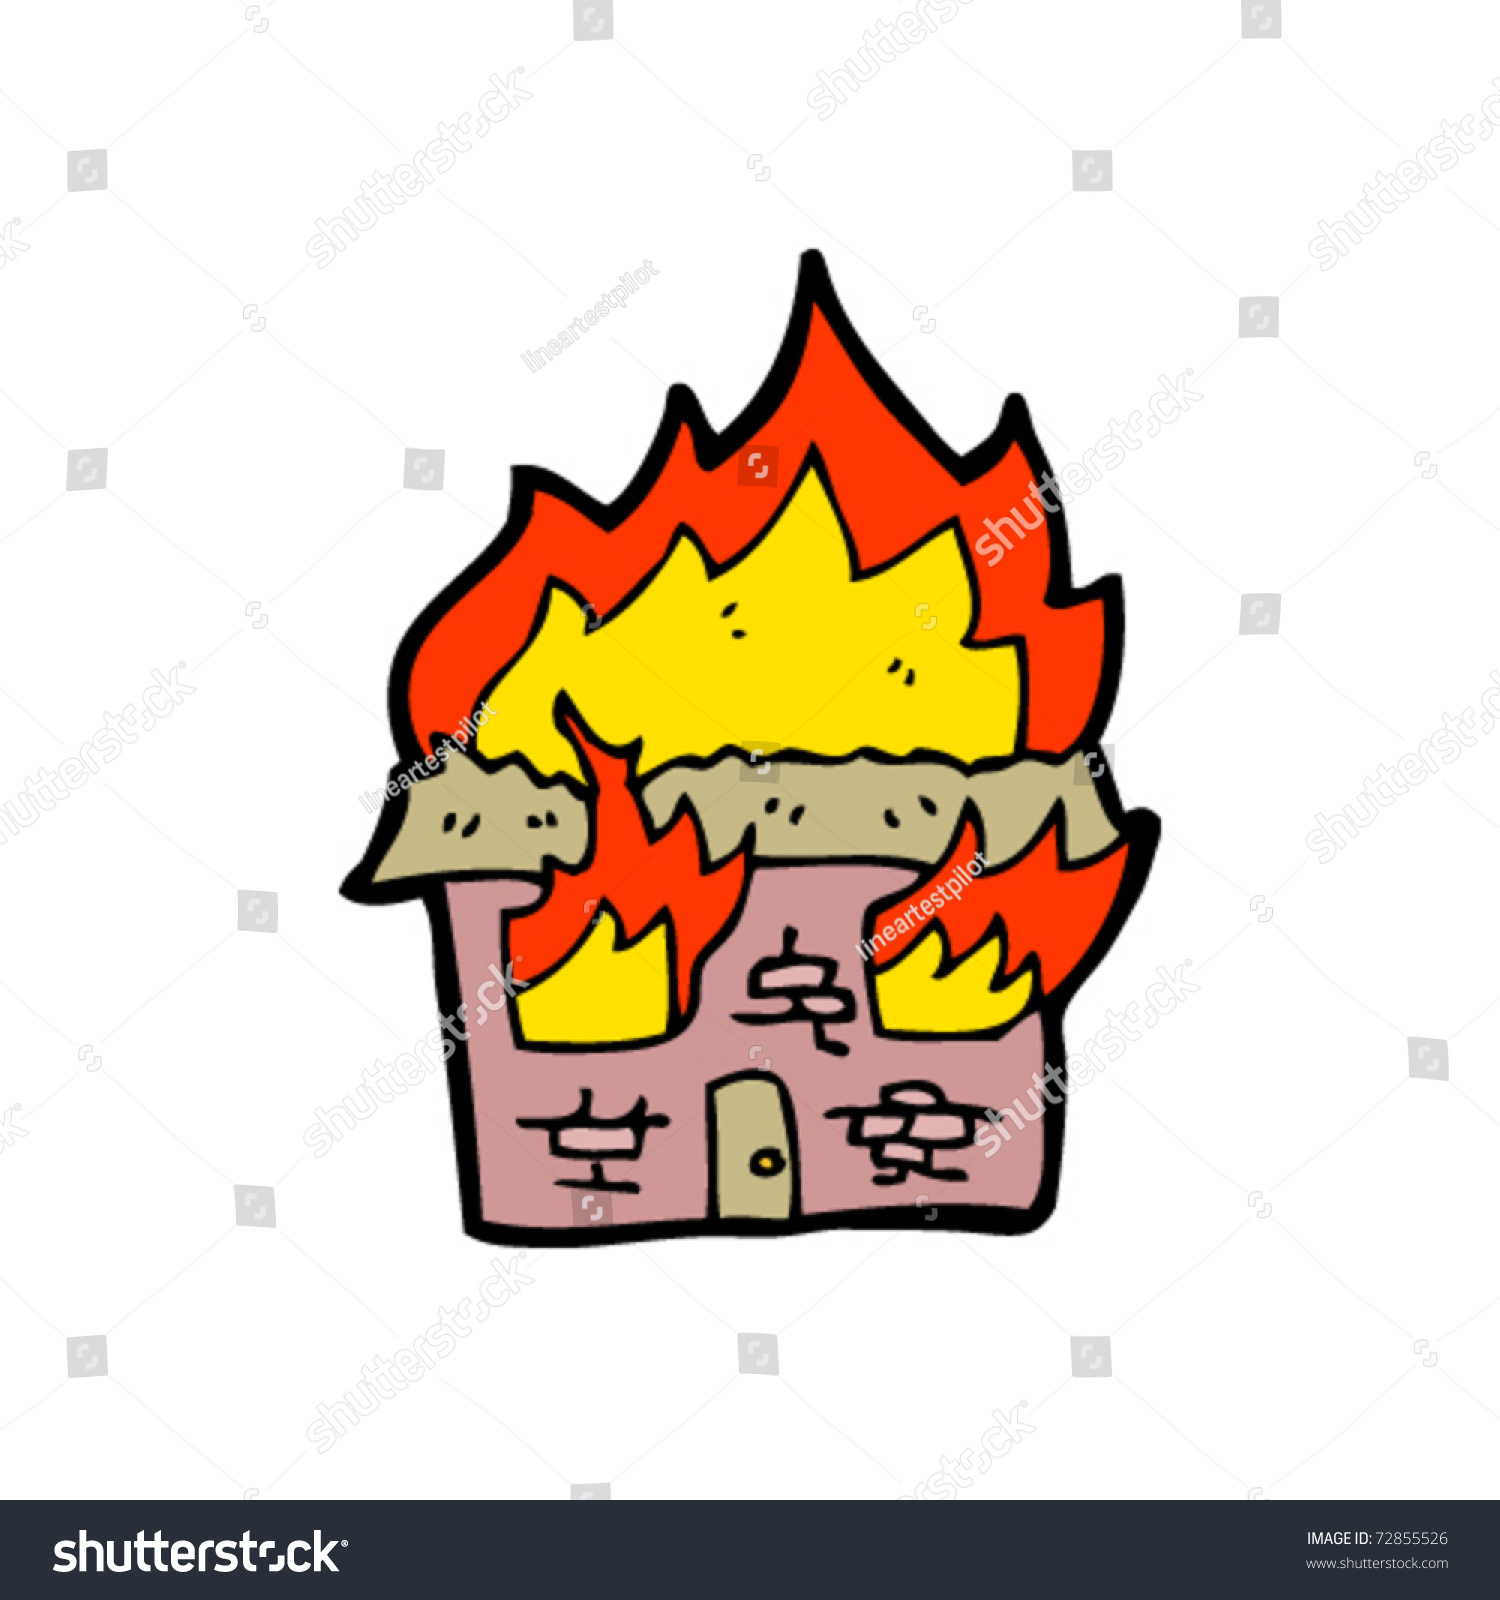 clipart burning house - photo #13